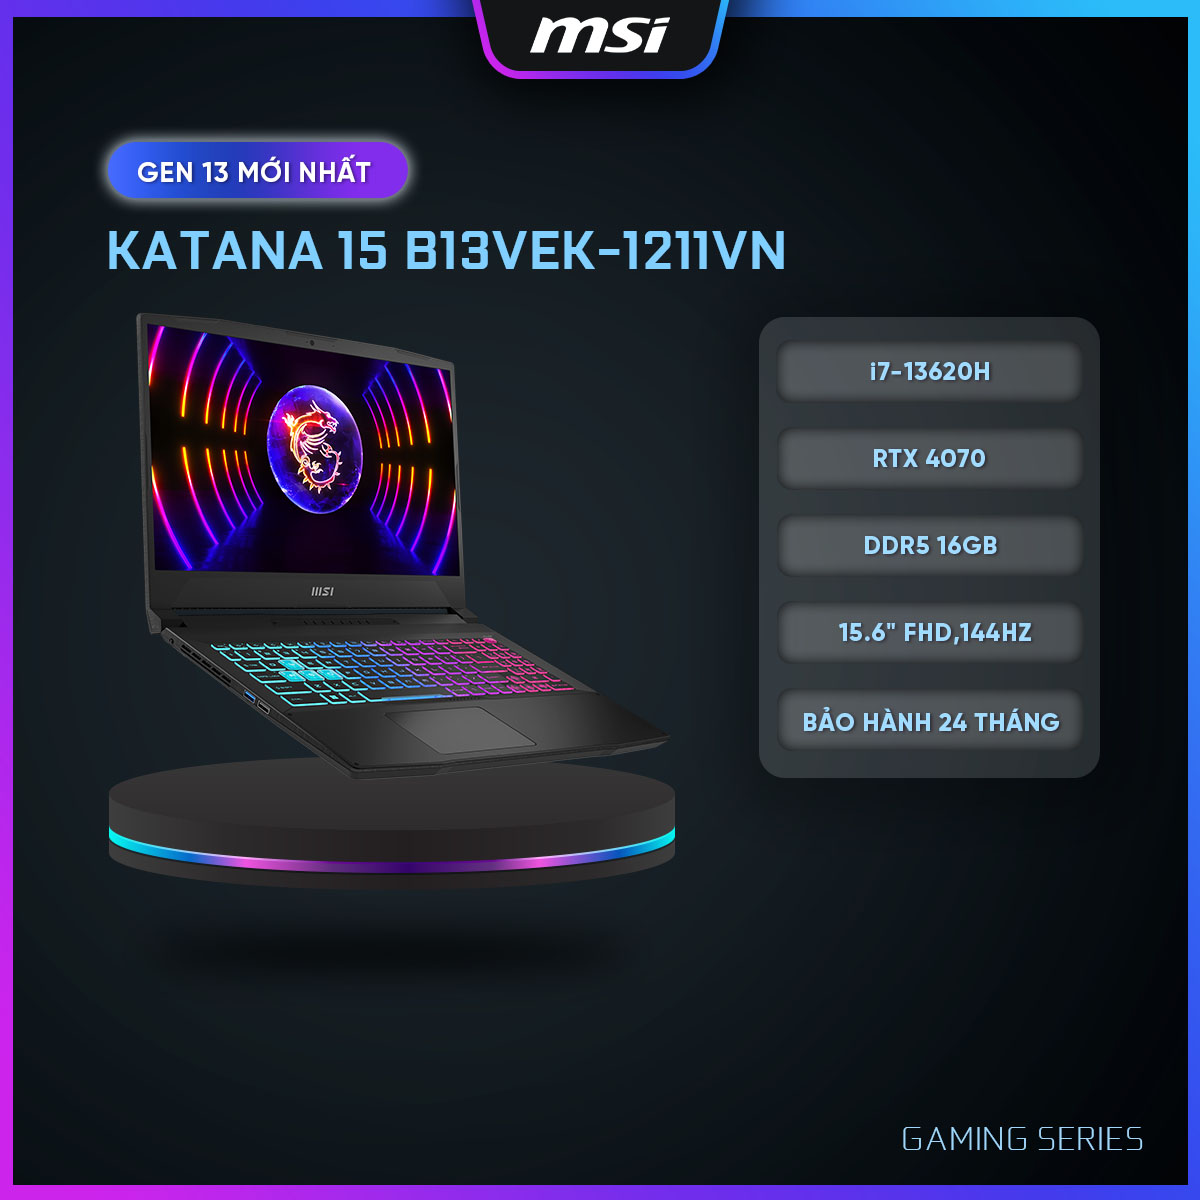 MSI Laptop Gaming Katana 15 B13VGK-1211VN|Intel i7-13620H|RTX 4070|Ram DDR5 16GB|Bộ nhớ 1TB SSD|15.6&quot; FHD,144Hz [HÀNG CHÍNH HÃNG]